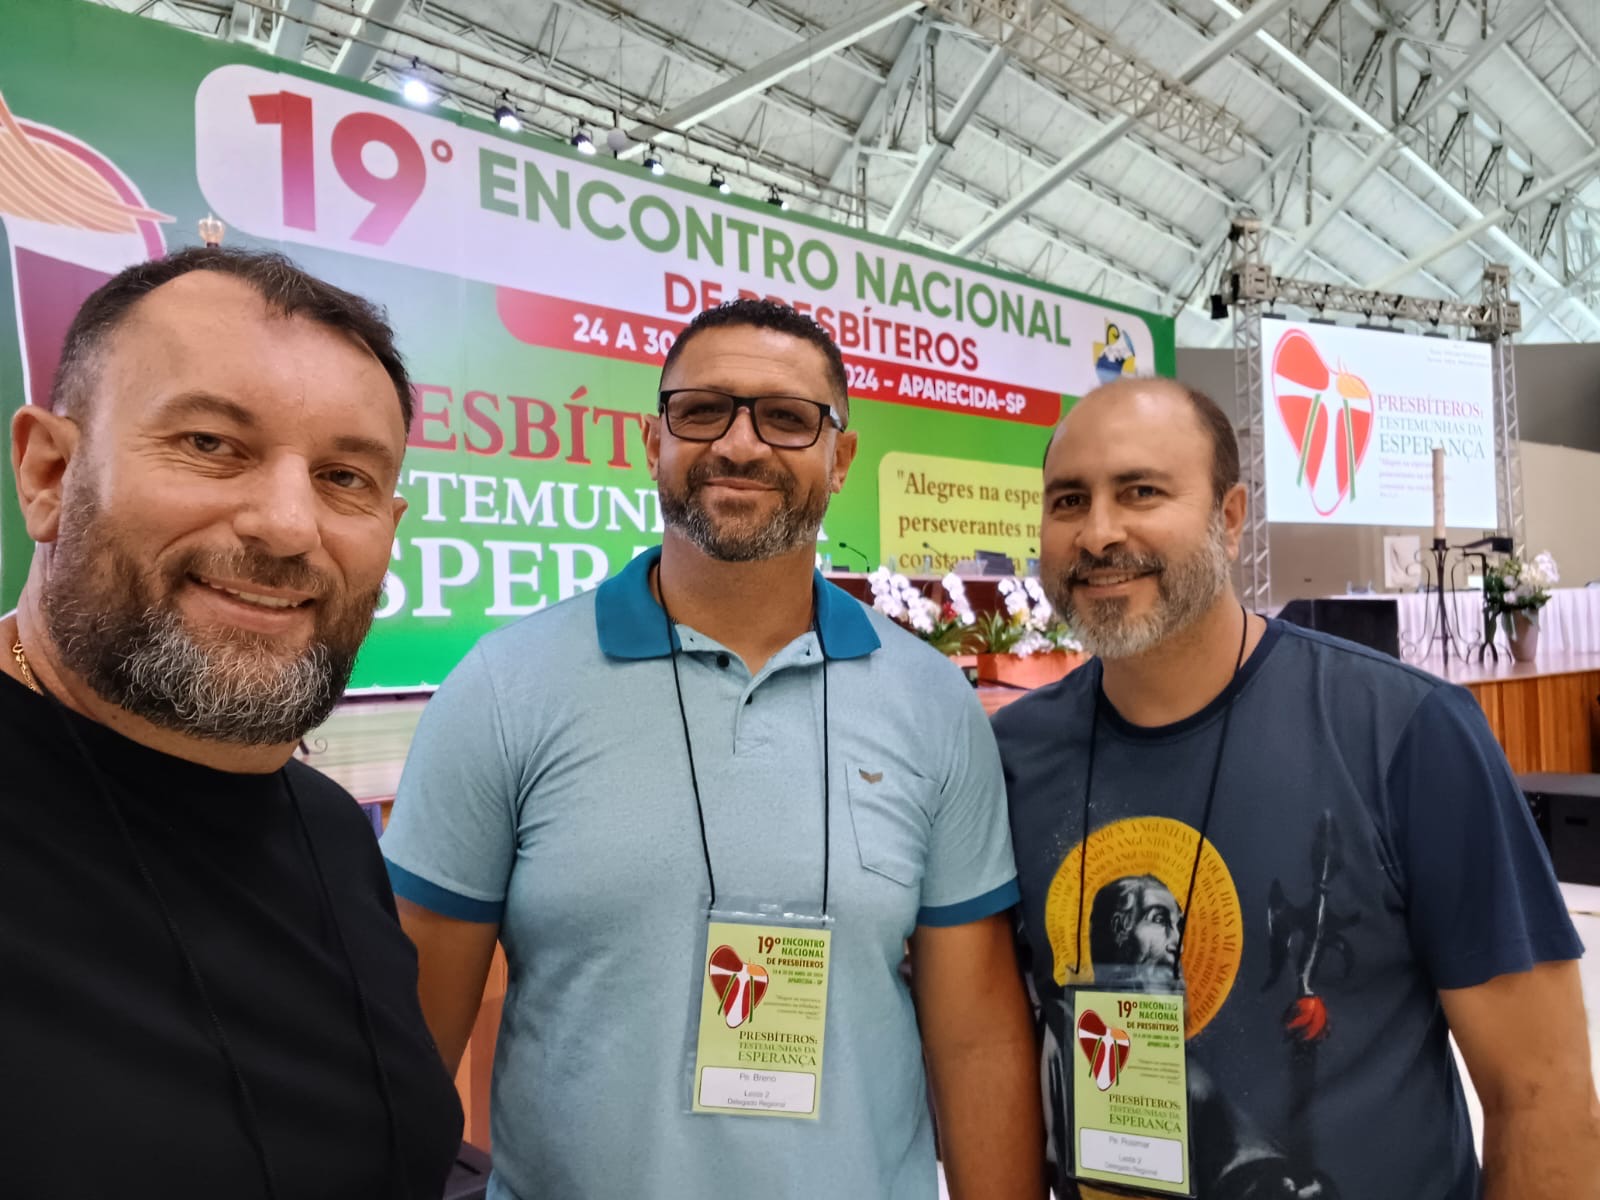 Notícia: Padres Carlos Antônio, Rosimar e Breno participam de encontro nacional dos presbíteros, em Aparecida